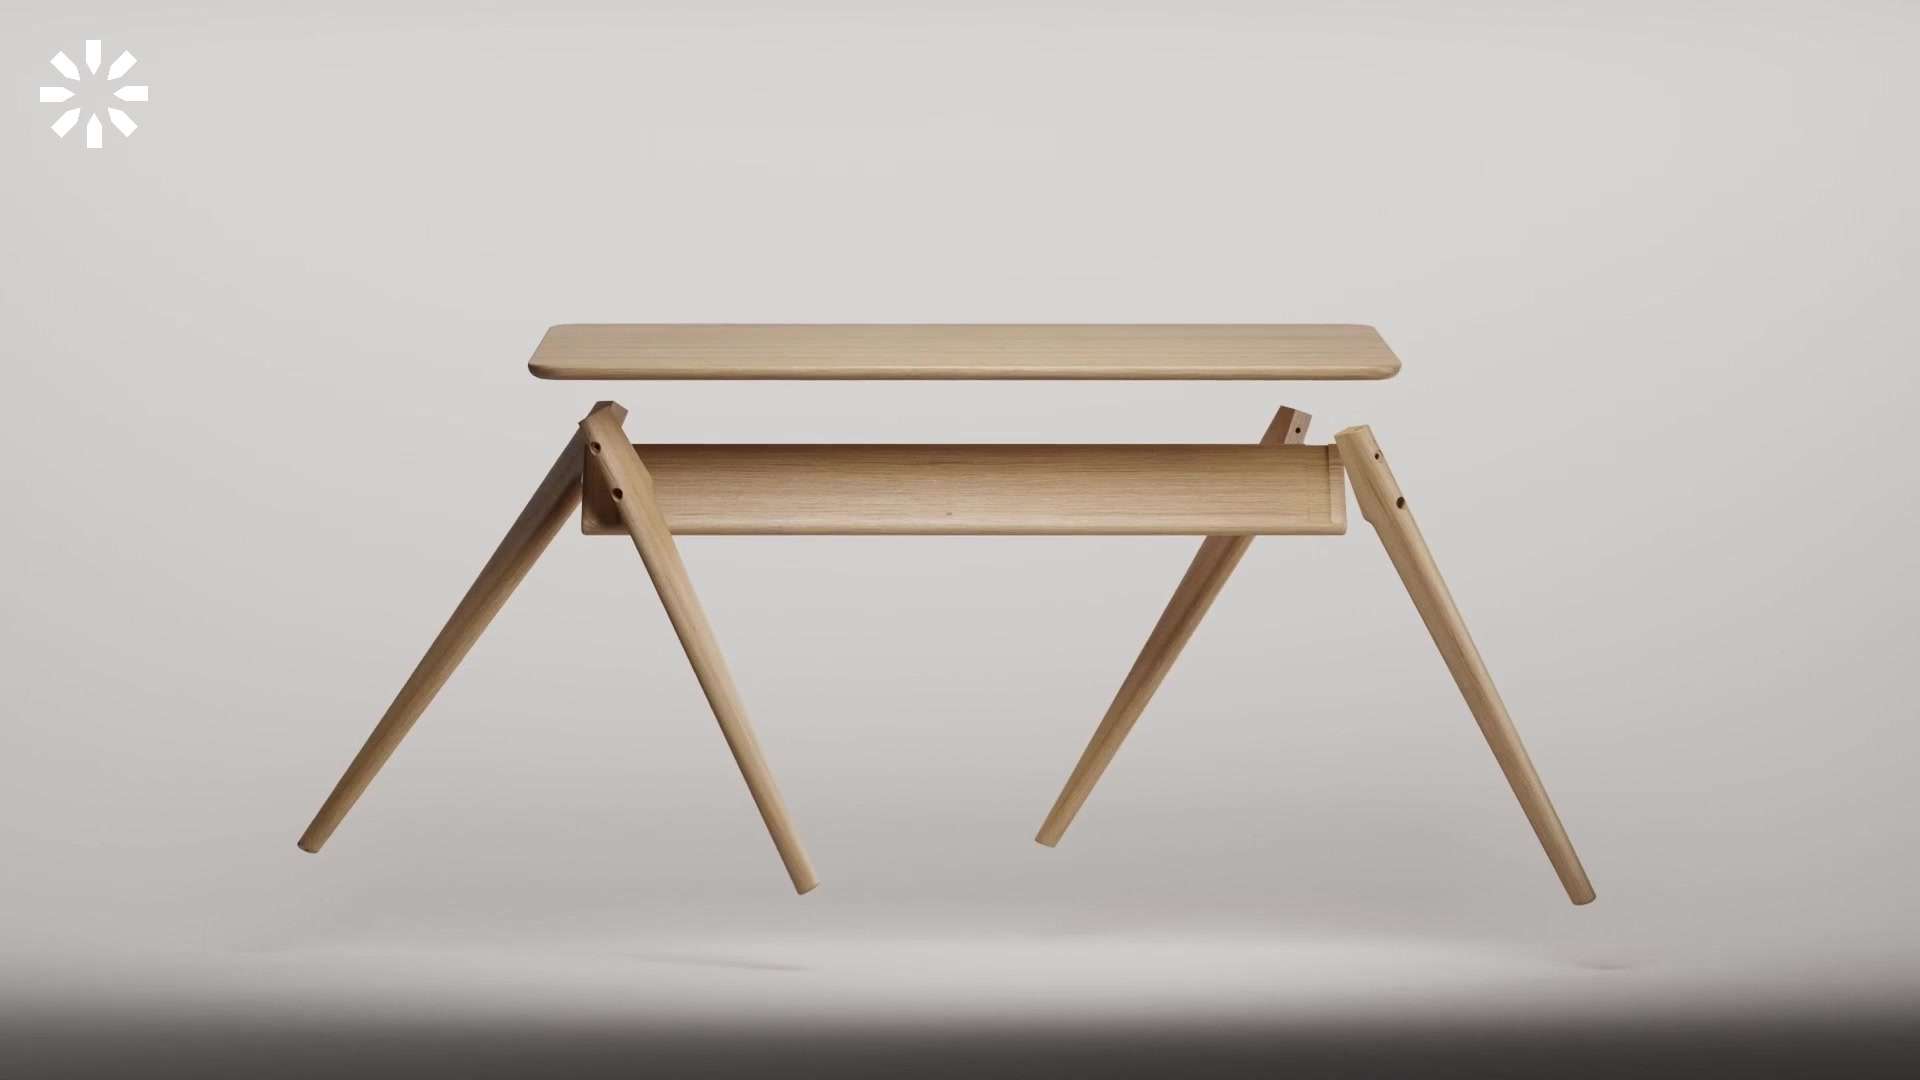 多功能可拆卸组装式木桌 三维动画